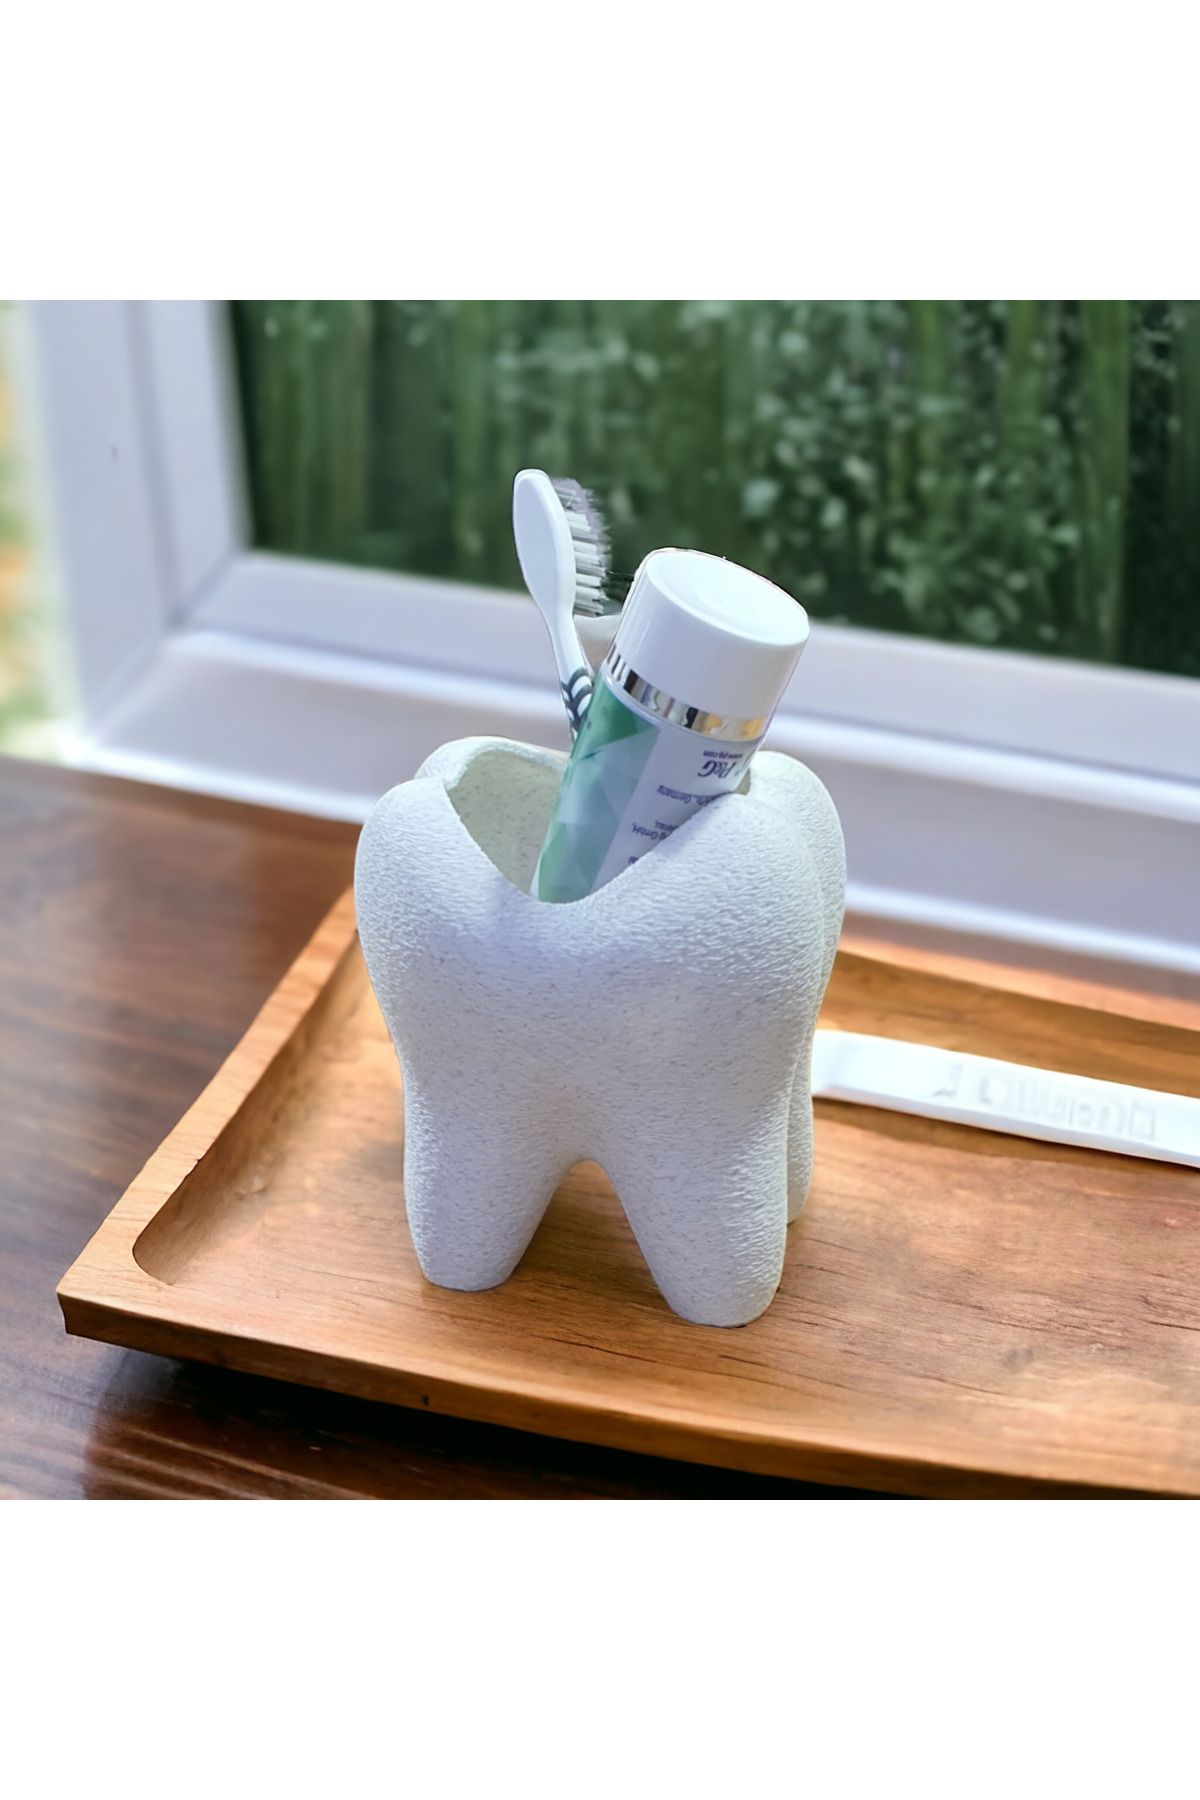 Maflen Tarz Diş Şeklinde Diş Fırçalık ( Artık Daha Büyük)